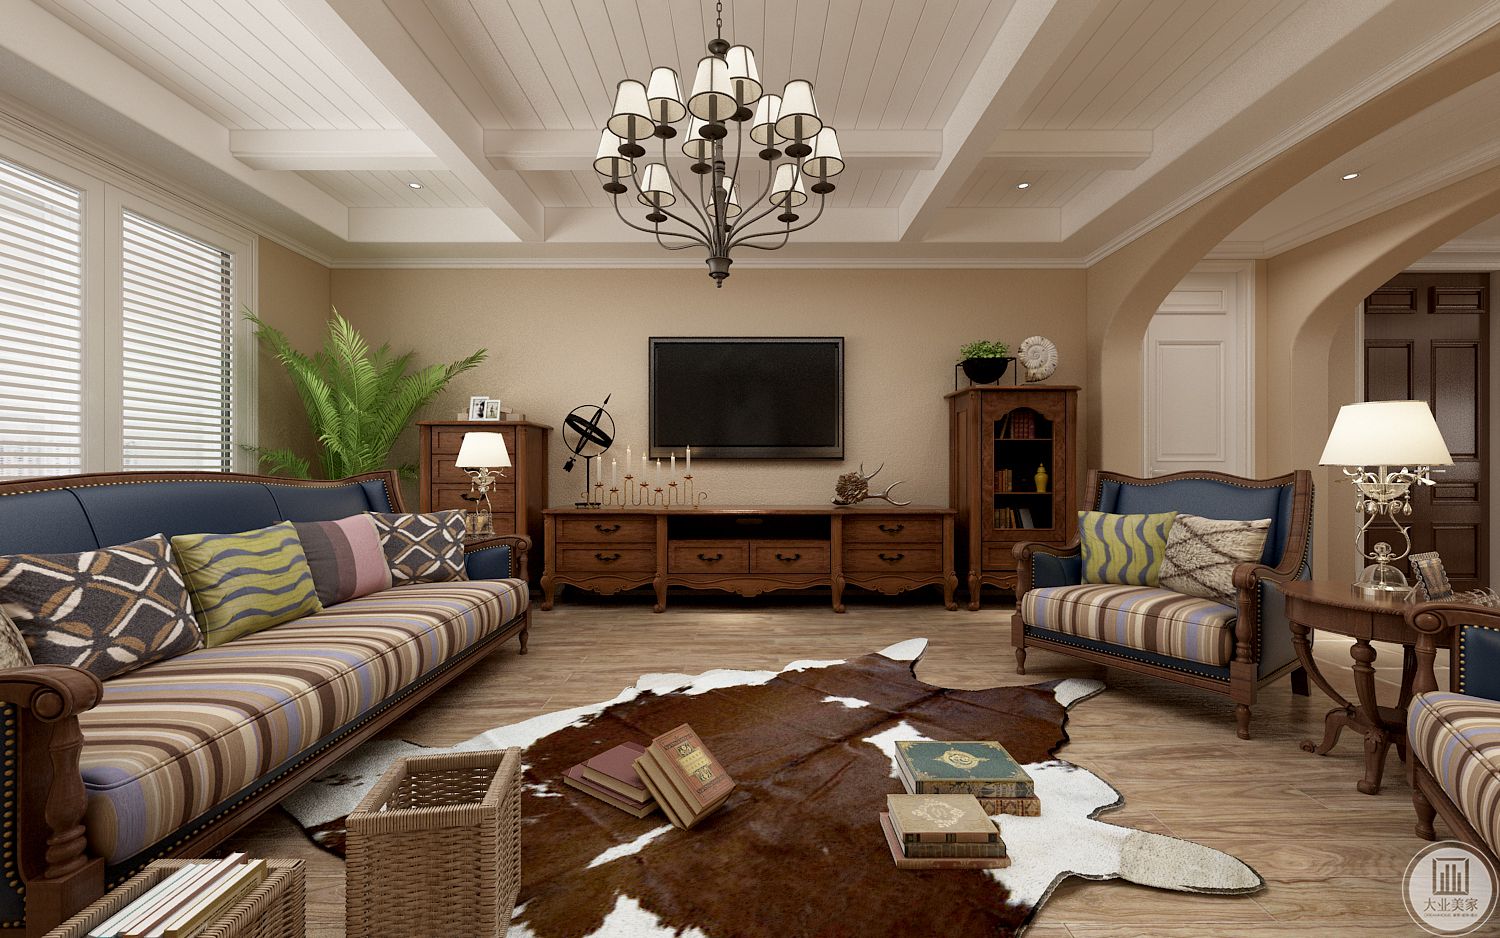 沙发色彩的搭配让整个空间更加靓丽